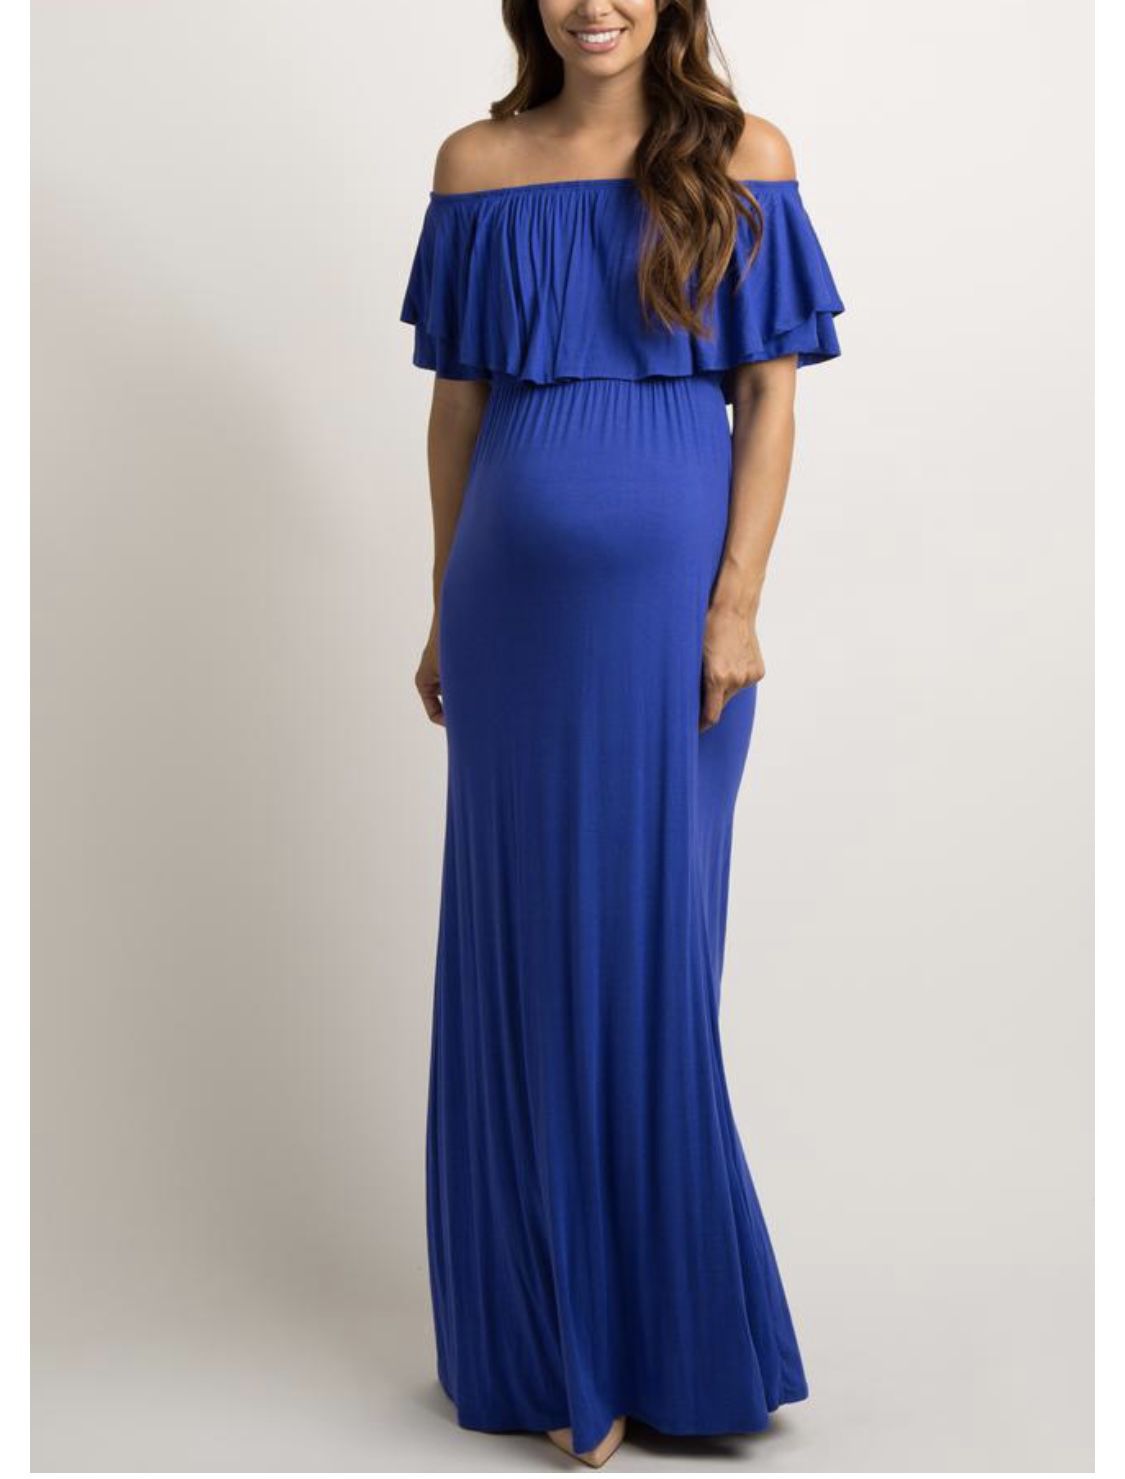 Royal Blue Off Shoulder Maternity Dress 